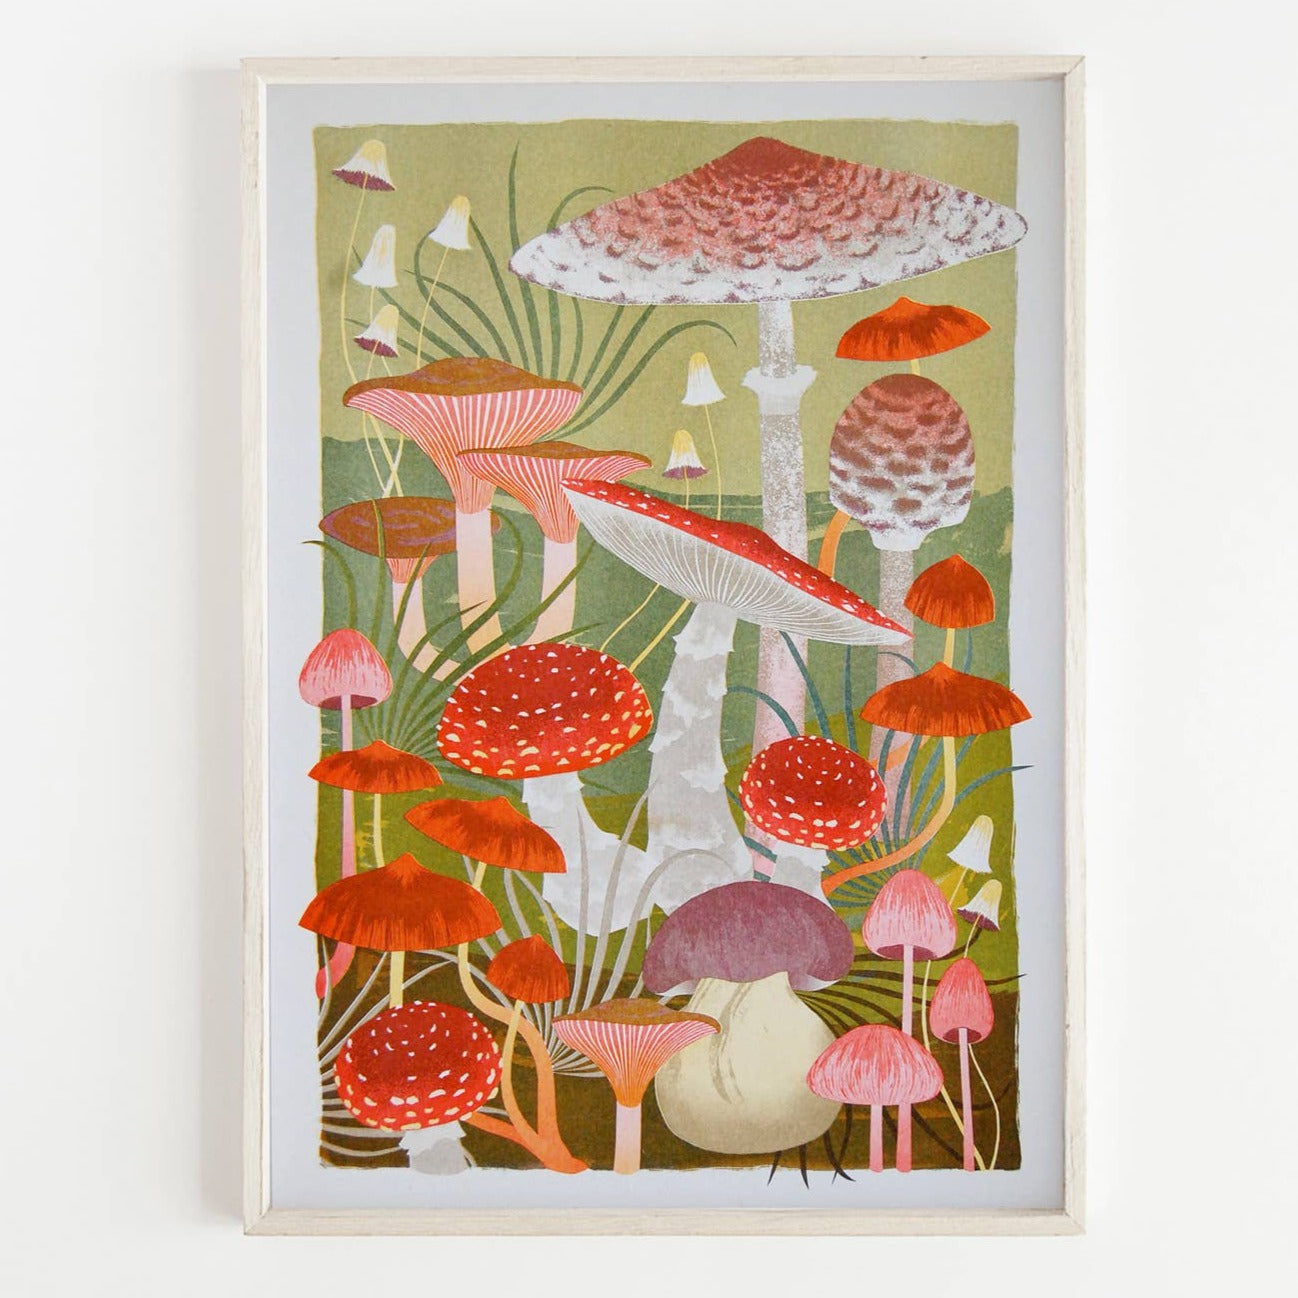 Printer Johnson - Fungi - A3 Risograph Print - COLORPOP